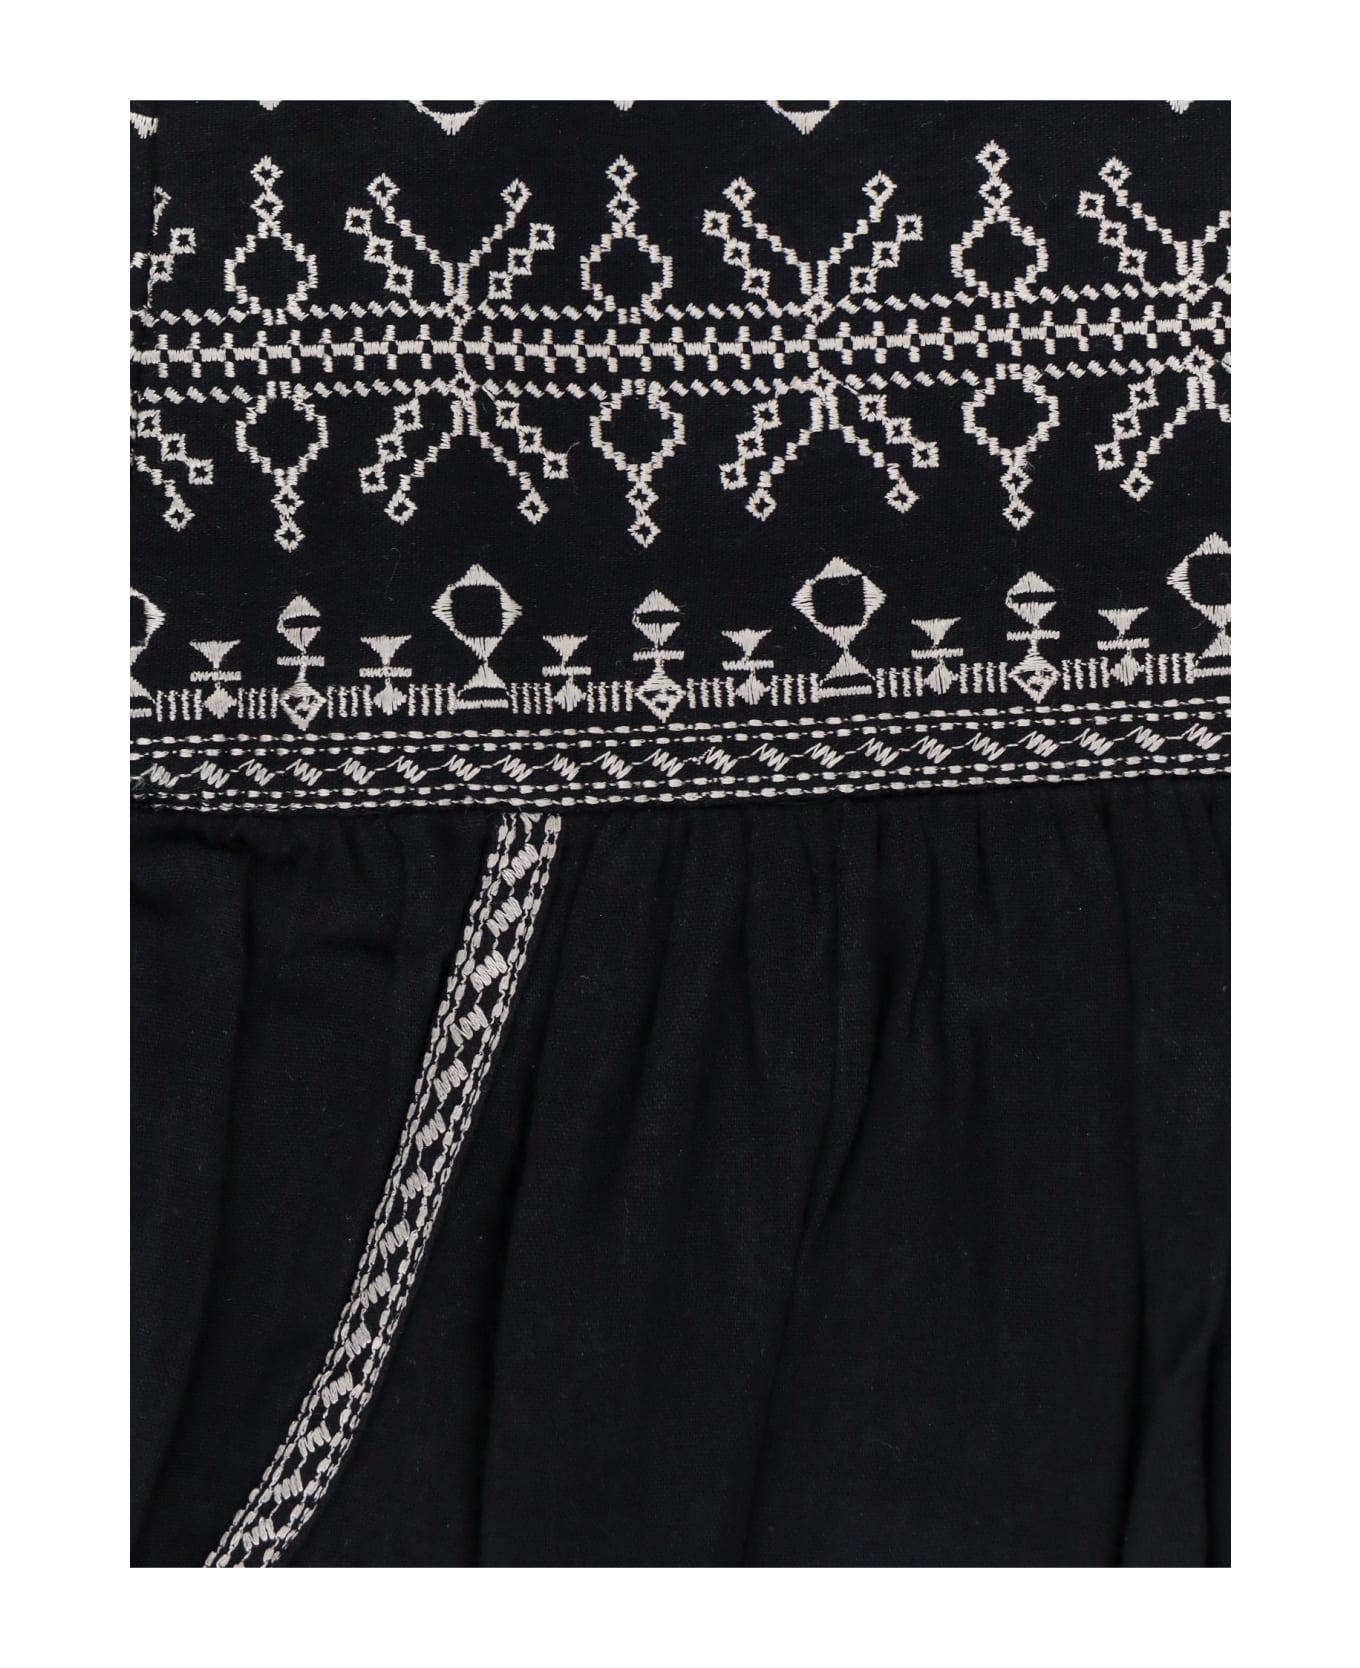 Marant Étoile Picadilia Skirt - Black スカート